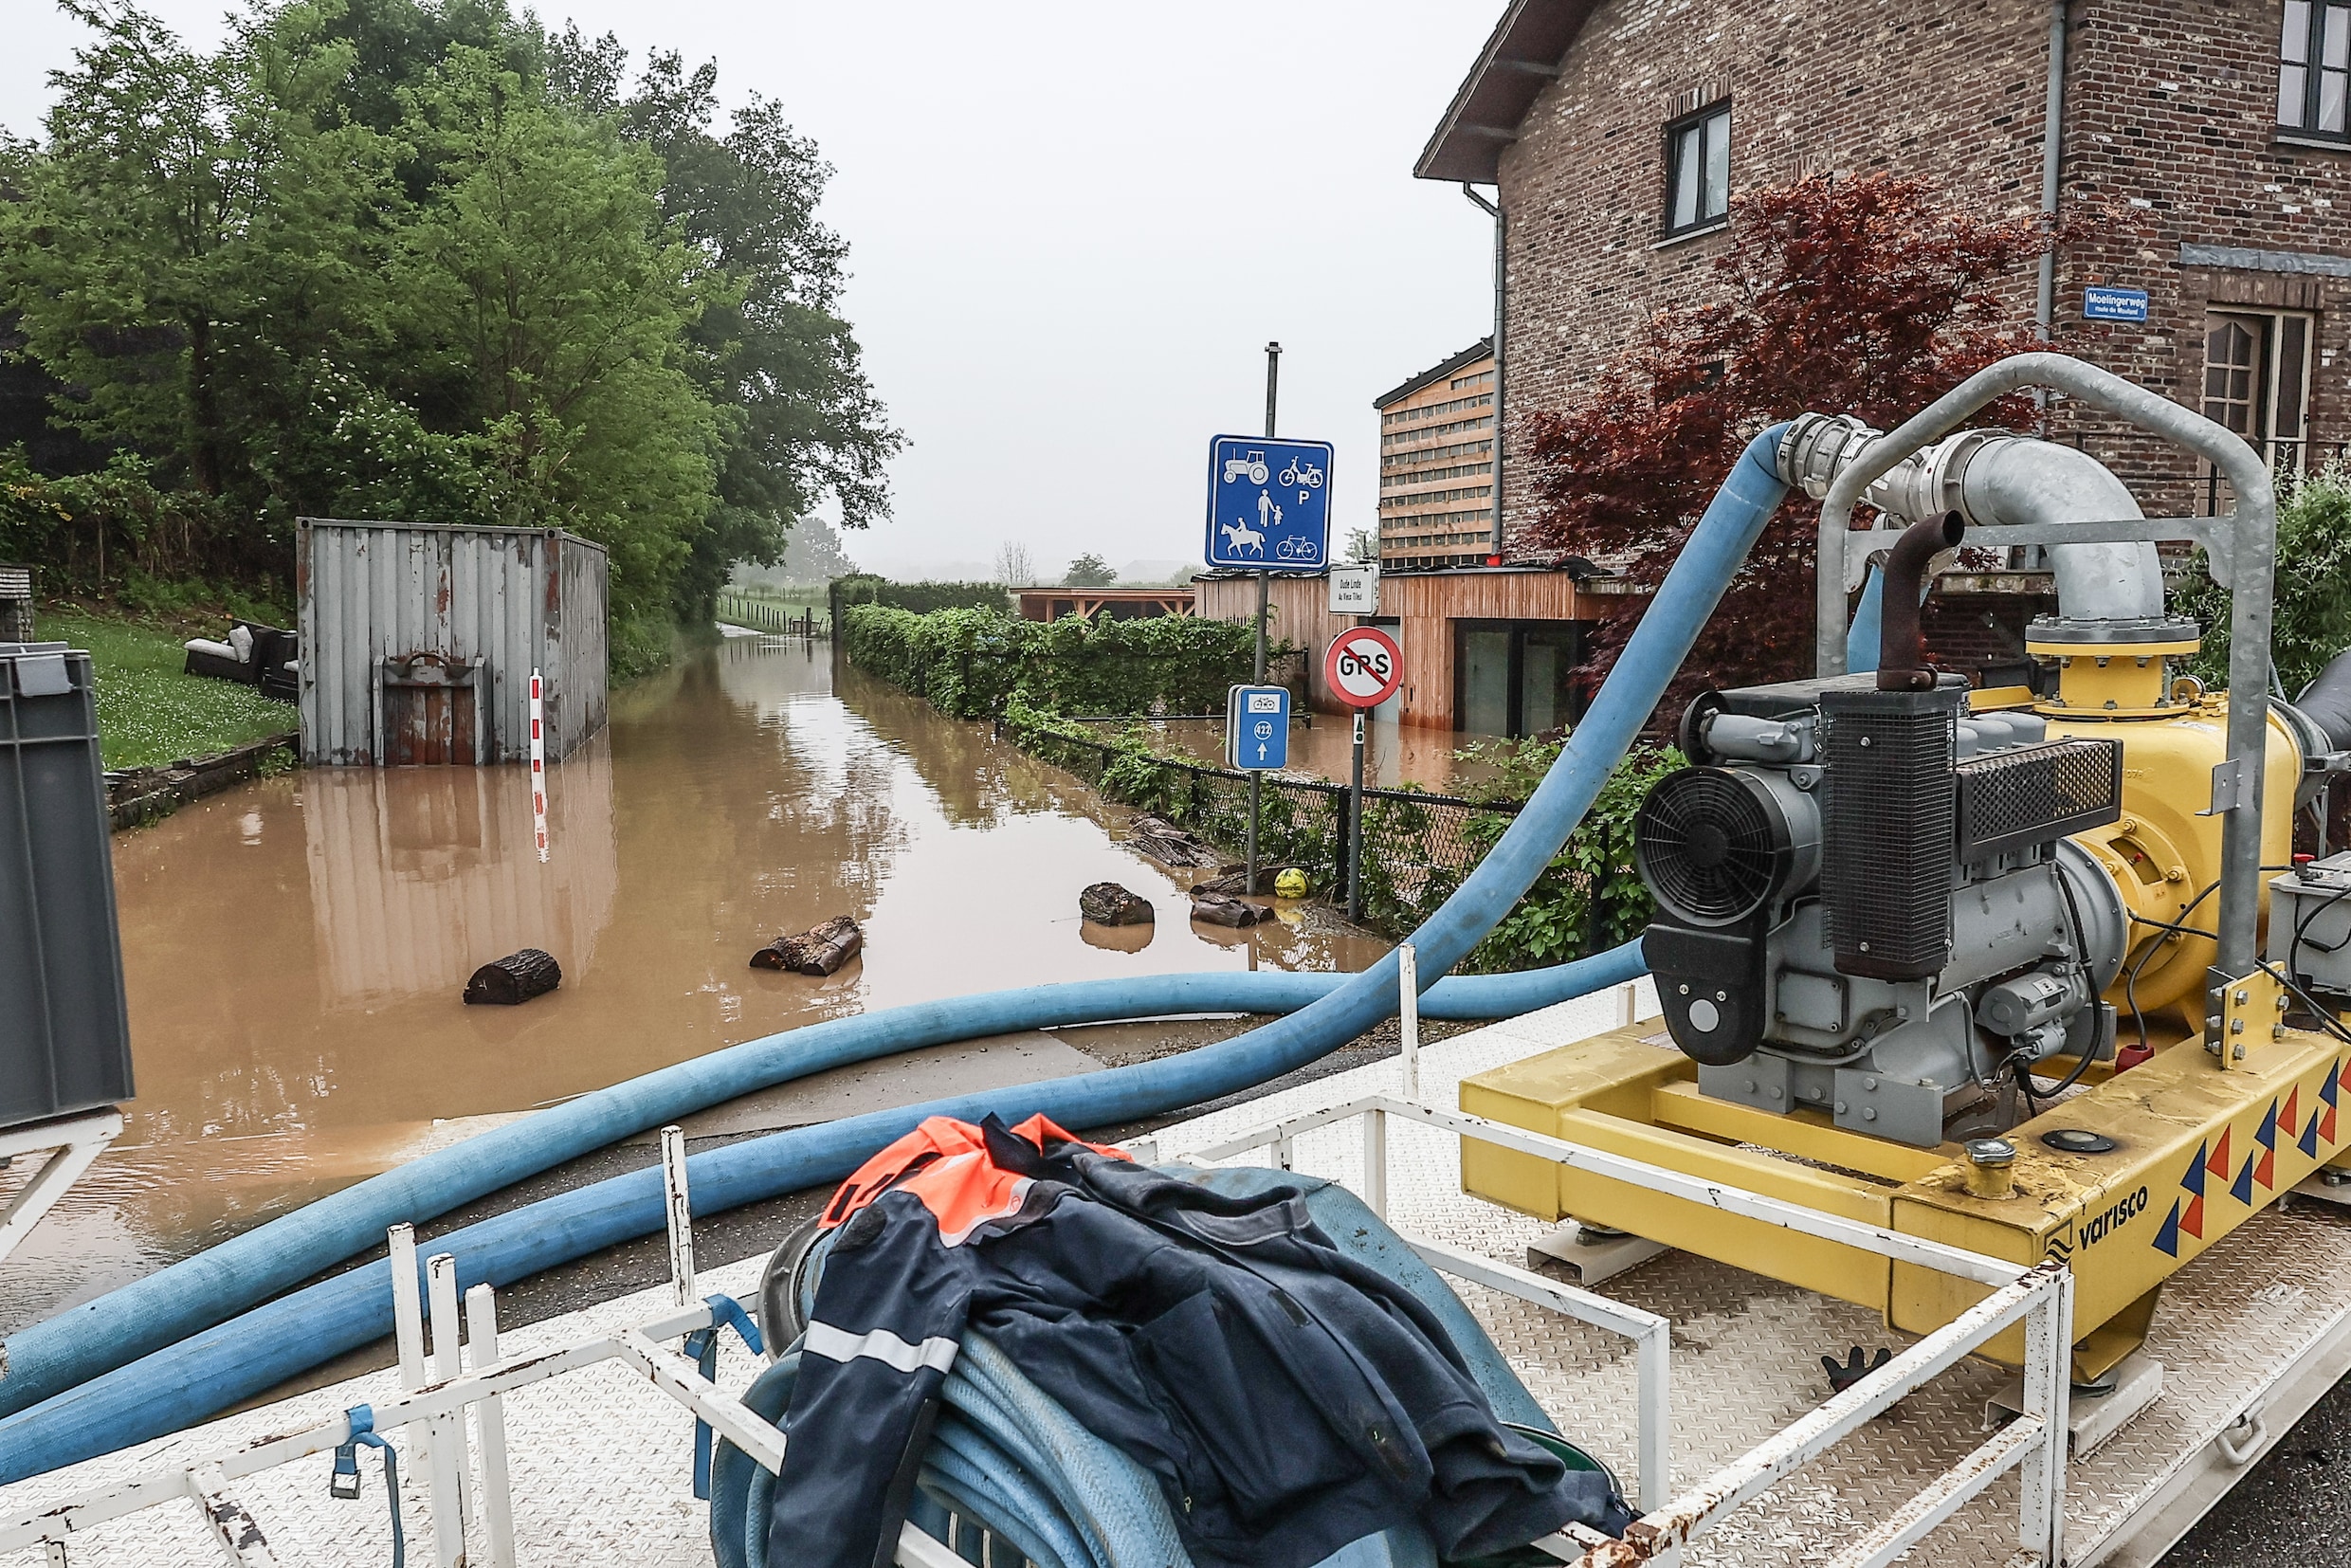 ▶ ‘Ergste overstromingen in geschiedenis’ van Voeren: inwoners kunnen terugkeren naar woning